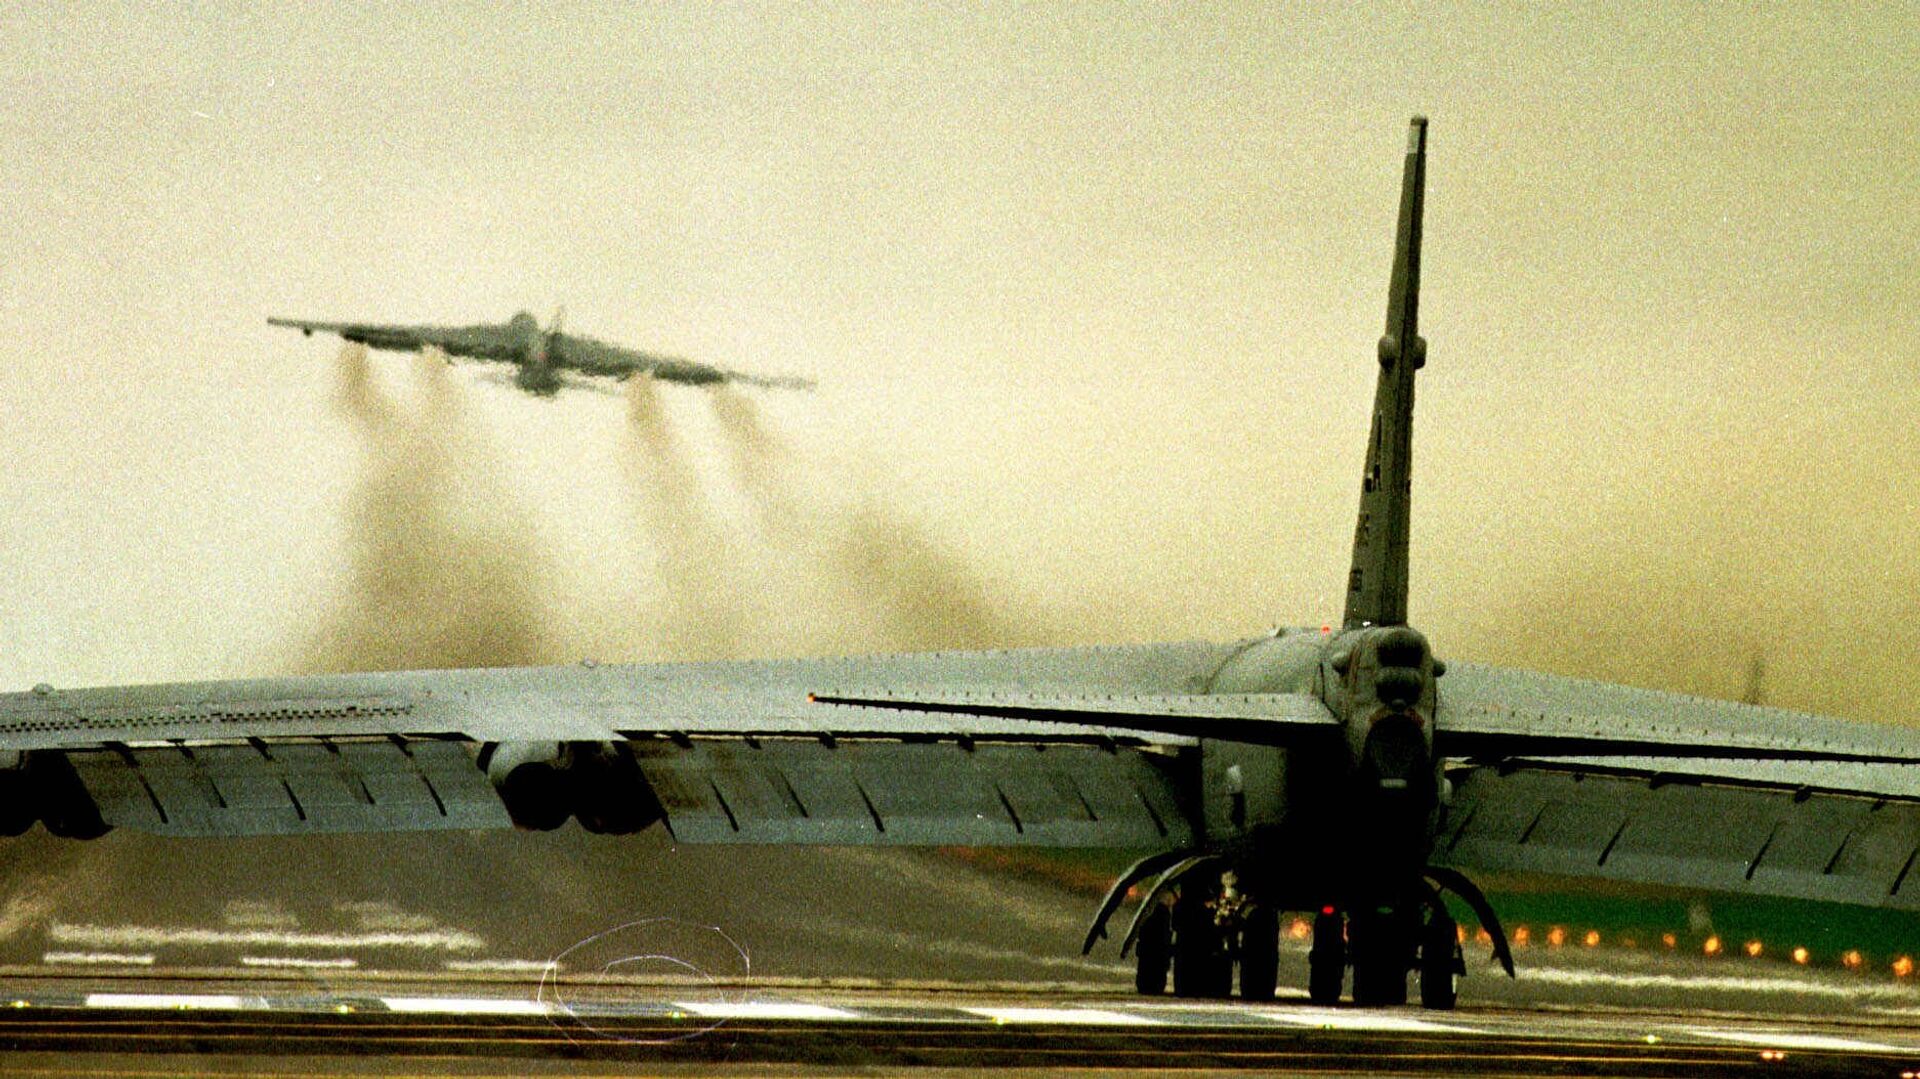 NATO avioni B-52 uzleću sa britanskog aerodroma Fejrford tokom bombardovanja SRJ 1999. - Sputnik Srbija, 1920, 26.03.2021